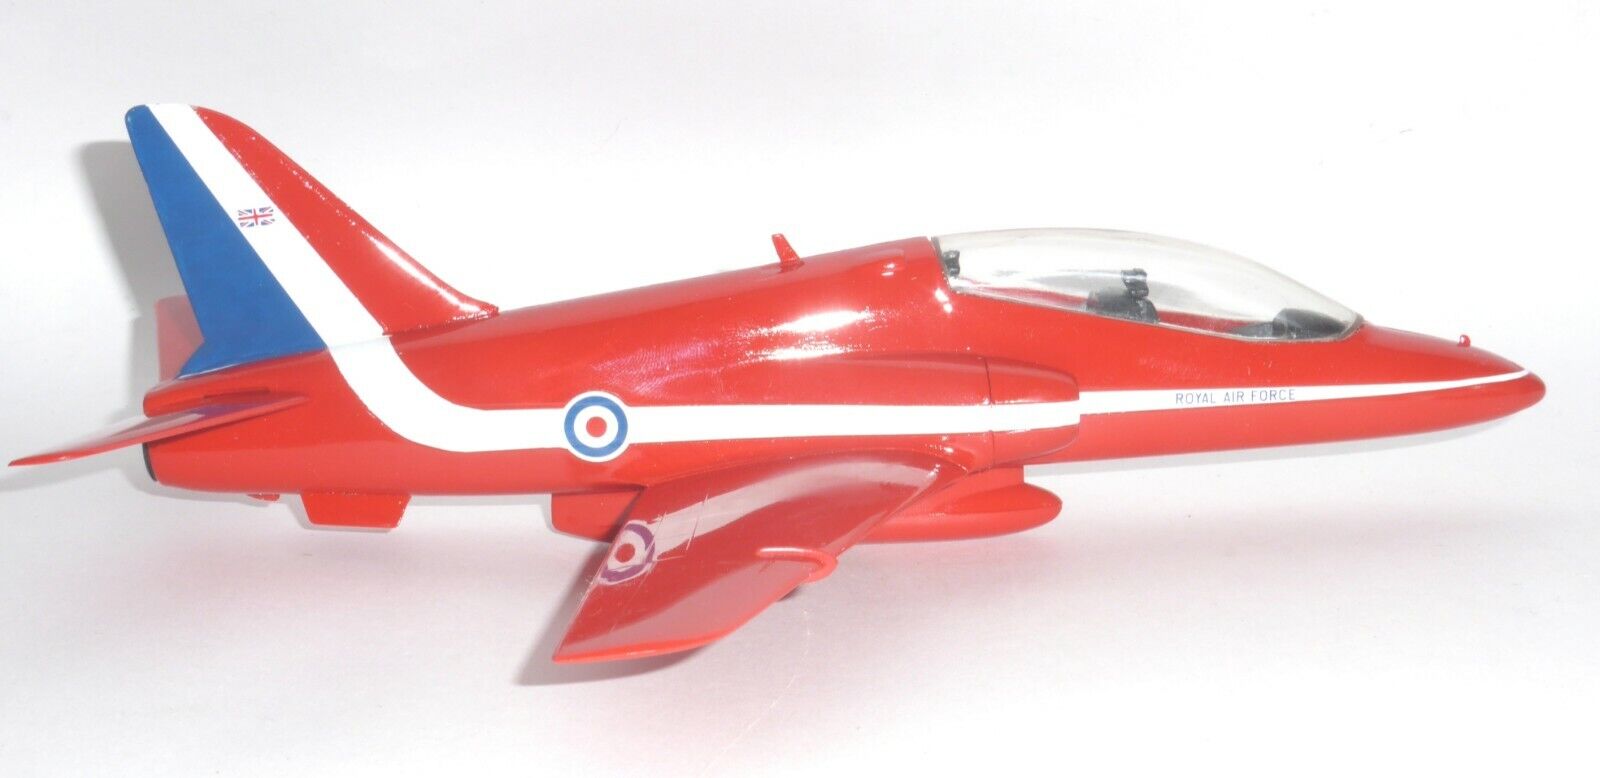 BAe Hawk RAF Red Arrows Vintage Master Models Collectors Model Scale c 1:56